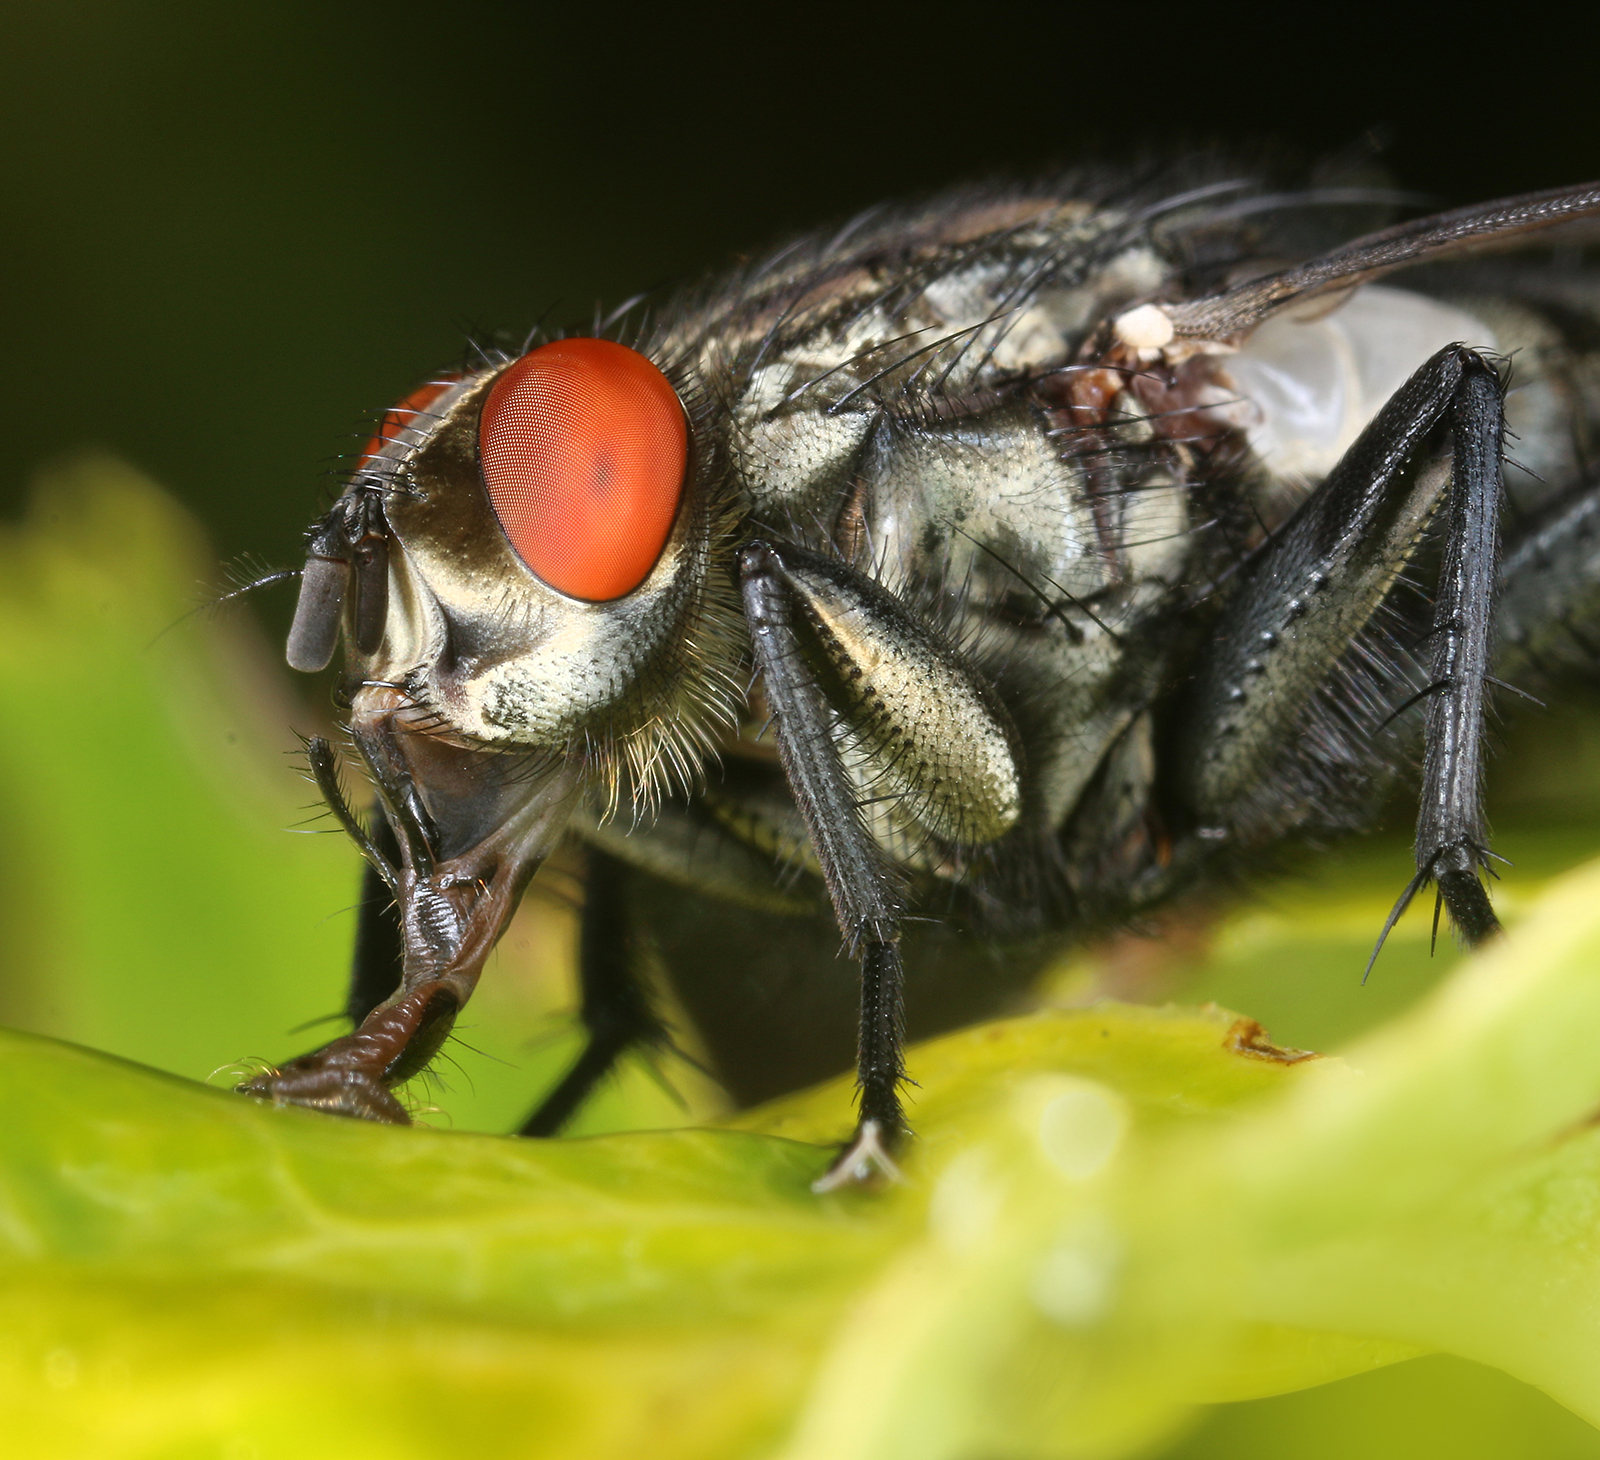 Do Flies Blink Their Eyes?